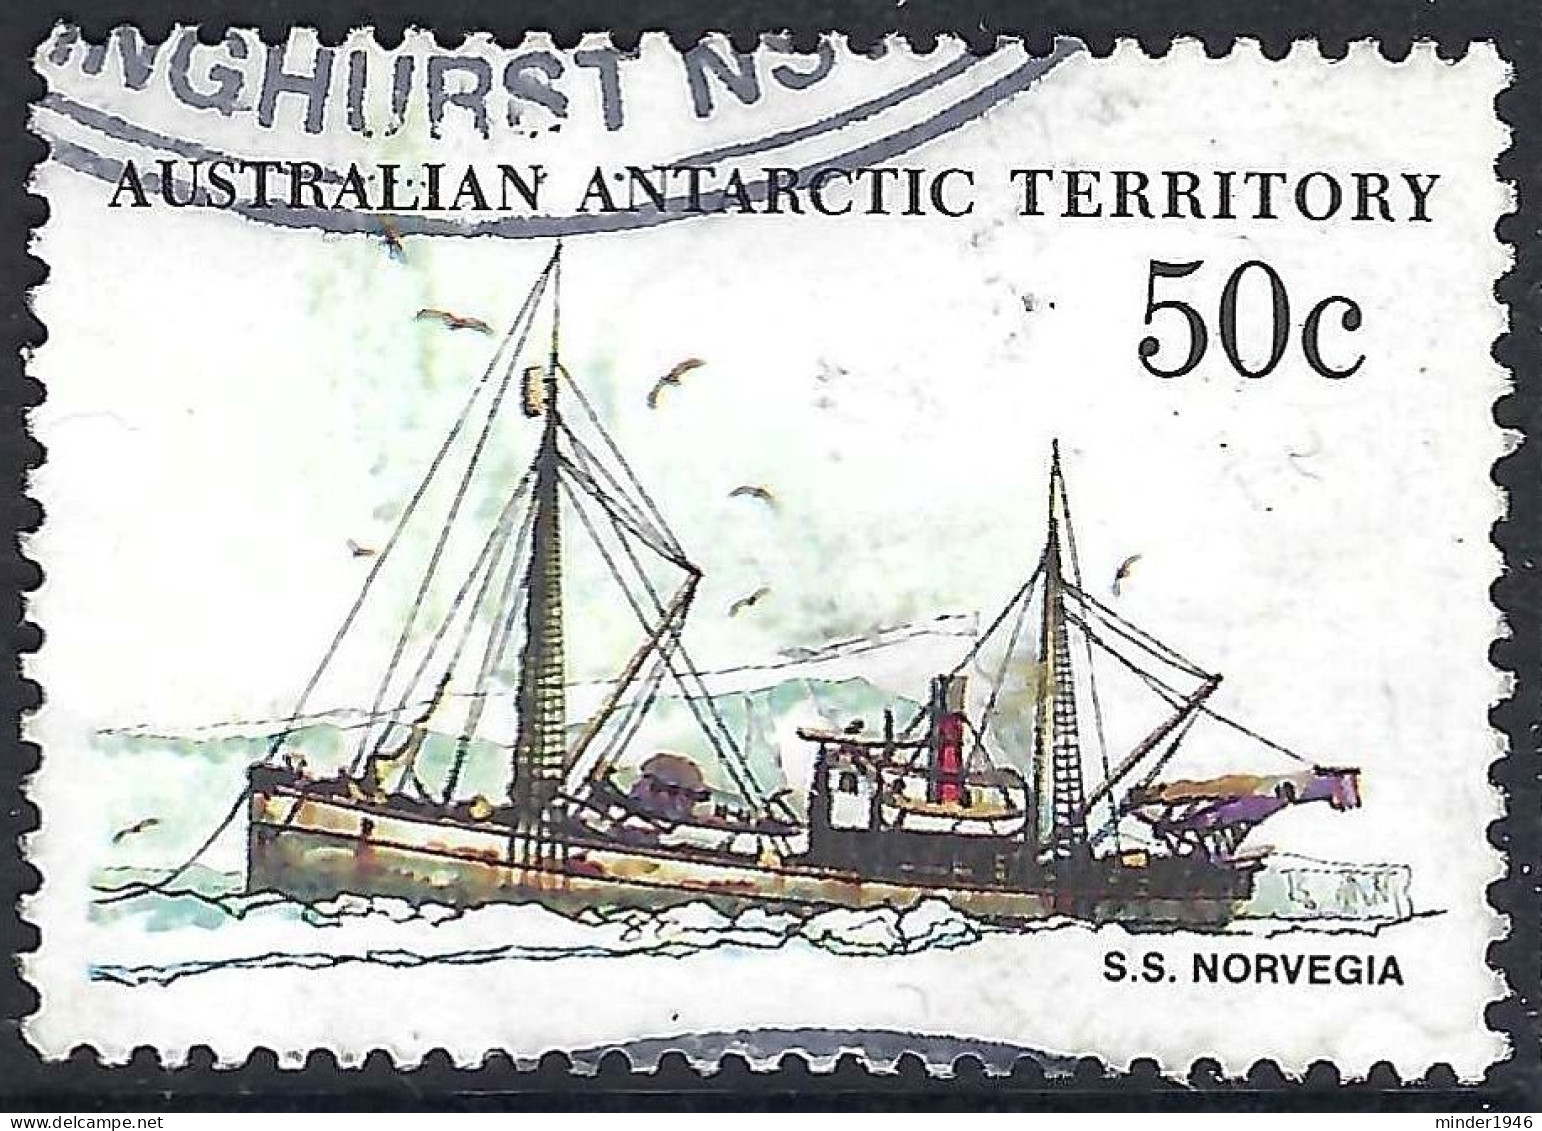 AUSTRALIAN ANTARCTIC TERRITORY (AAT) 1979 QEII 50c Multicoloured 'Ships, S.S Norvegia SG50 FU - Usati